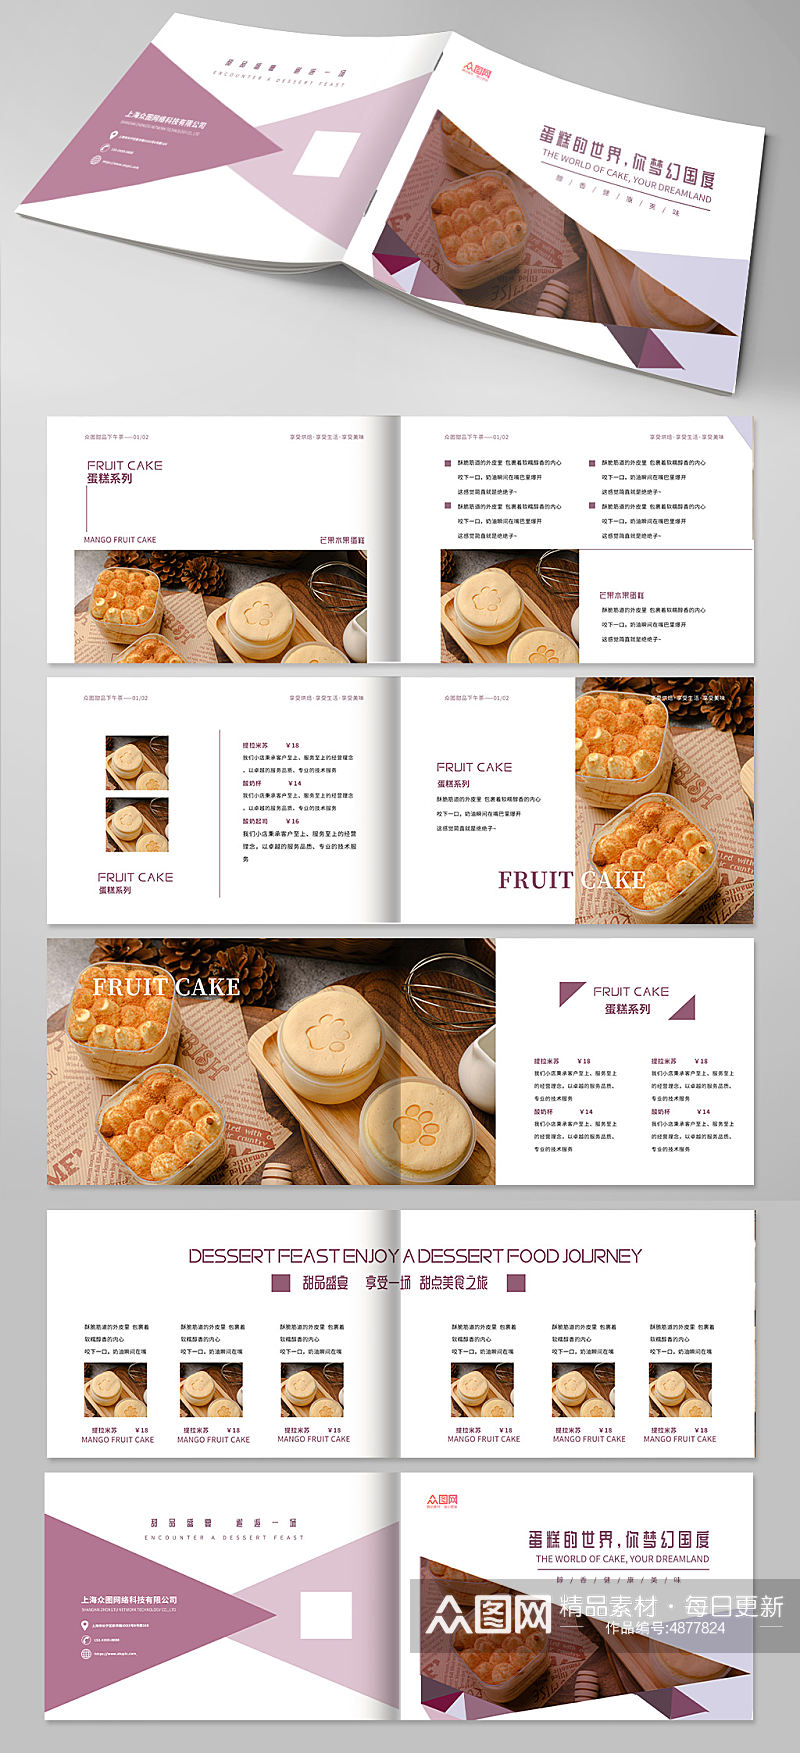 梦幻甜点甜品蛋糕下午茶美食宣传册画册素材